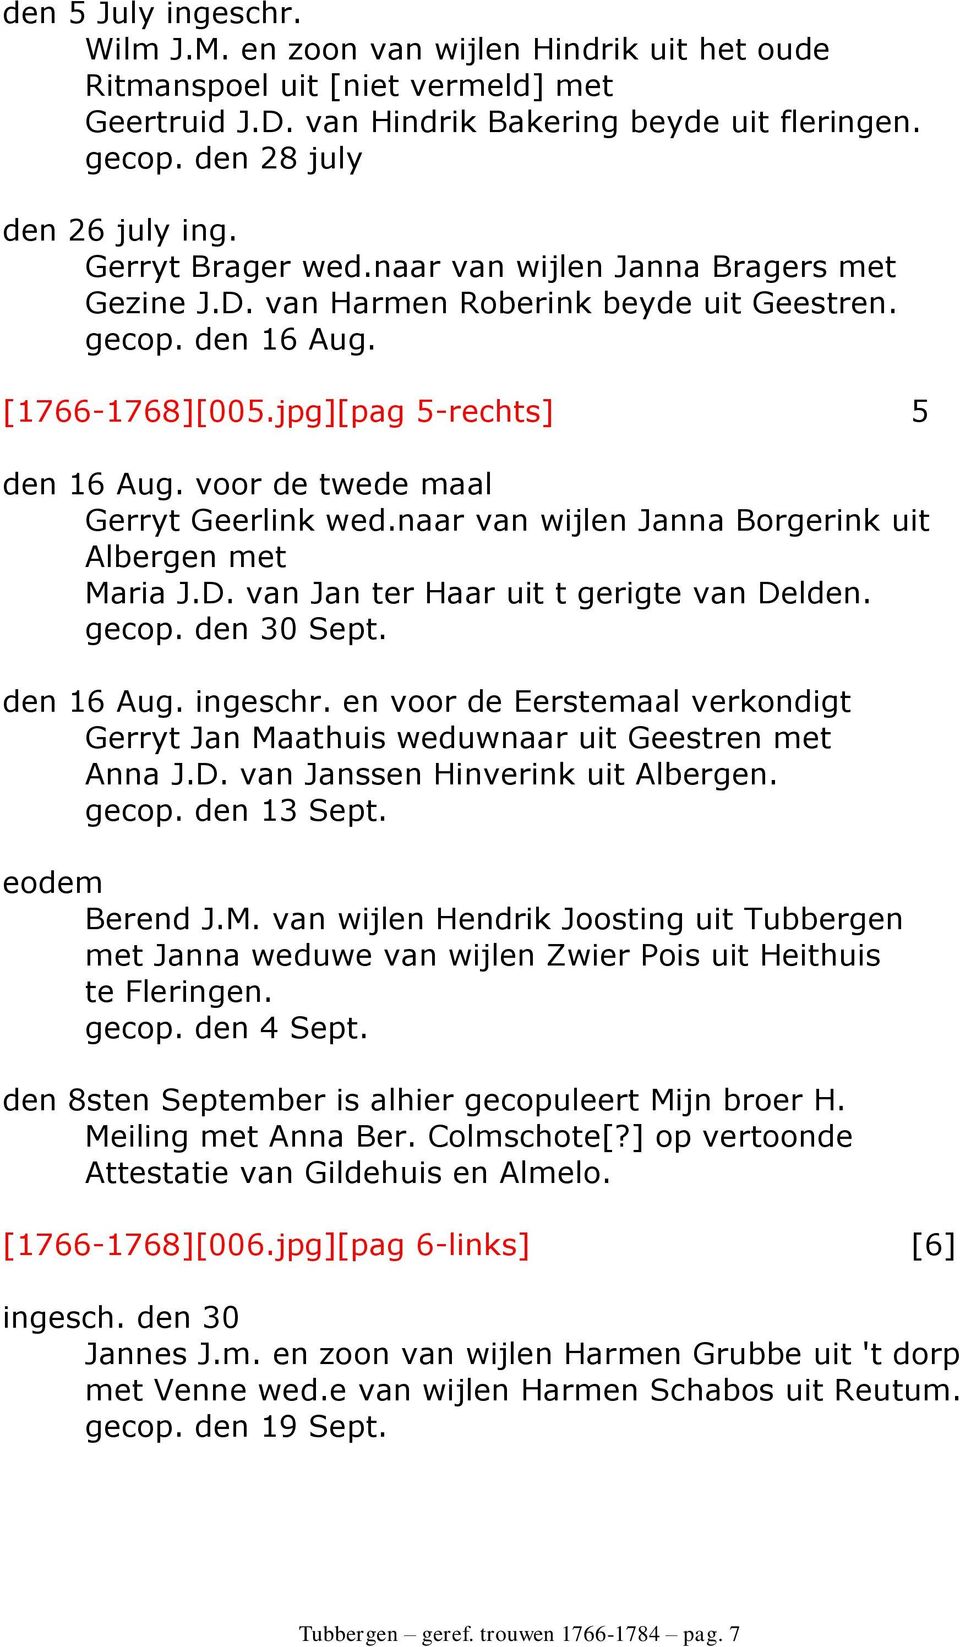 voor de twede maal Gerryt Geerlink wed.naar van wijlen Janna Borgerink uit Albergen met Maria J.D. van Jan ter Haar uit t gerigte van Delden. gecop. den 30 Sept. den 16 Aug. ingeschr.